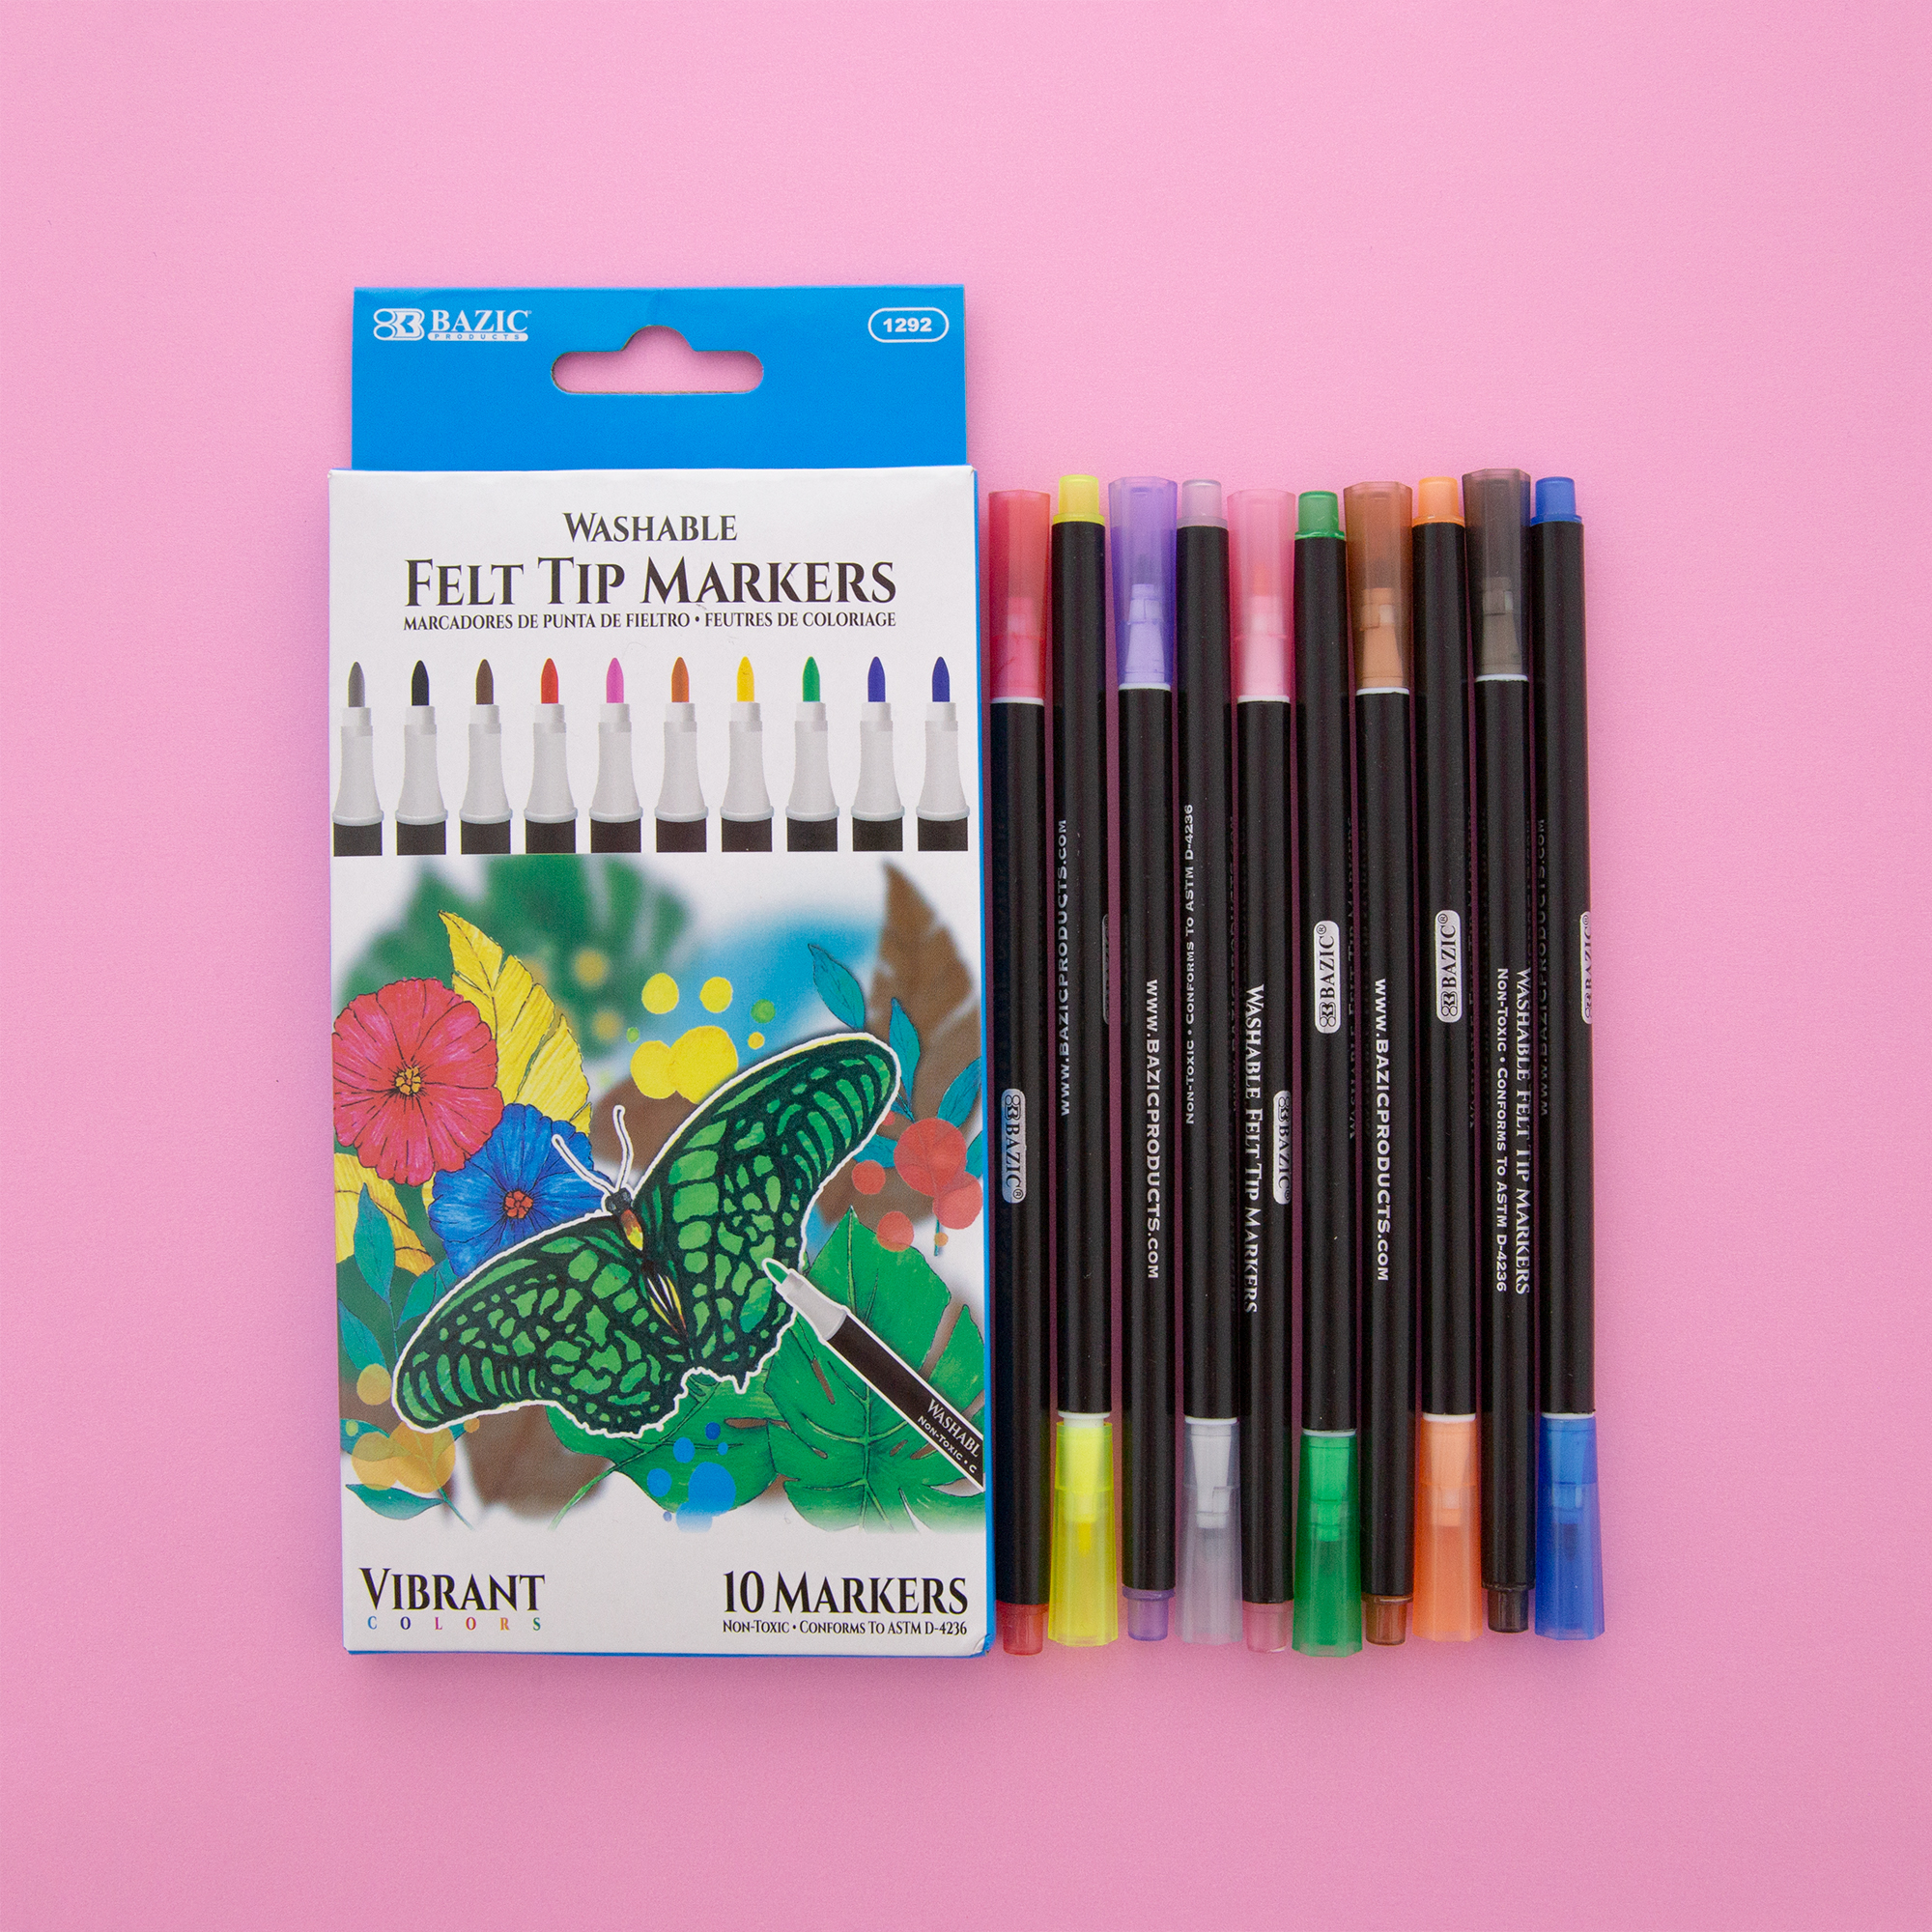 Basics Felt Tip Marker Pens - Assorted Color, 12-Pack, Colors  192233017495